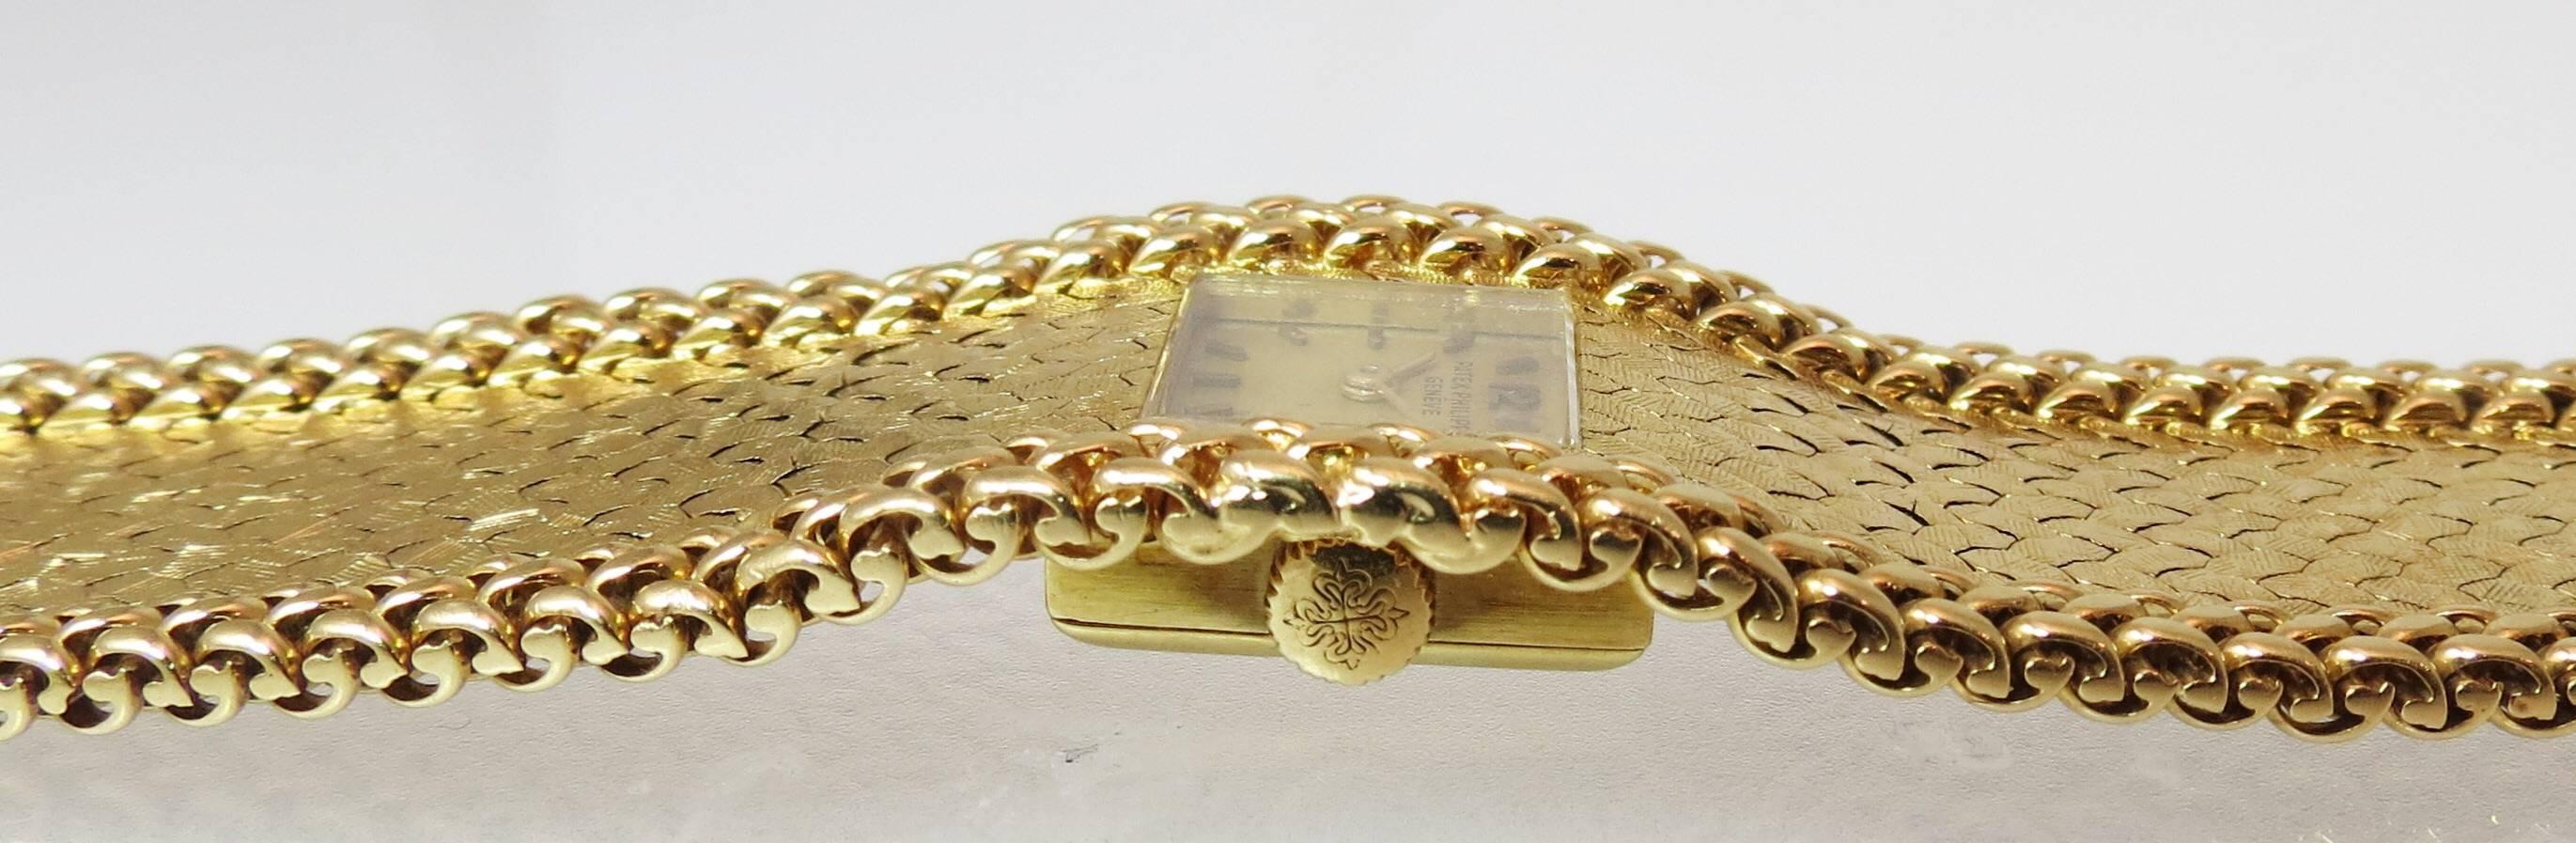 Montre-bracelet Patek Philippe en or jaune 18 carats pour dame, finition florentine avec bordure tissée à trois rangs, remontage manuel et fermoir de sécurité en forme de huit.
Dernière vente au détail 30 000